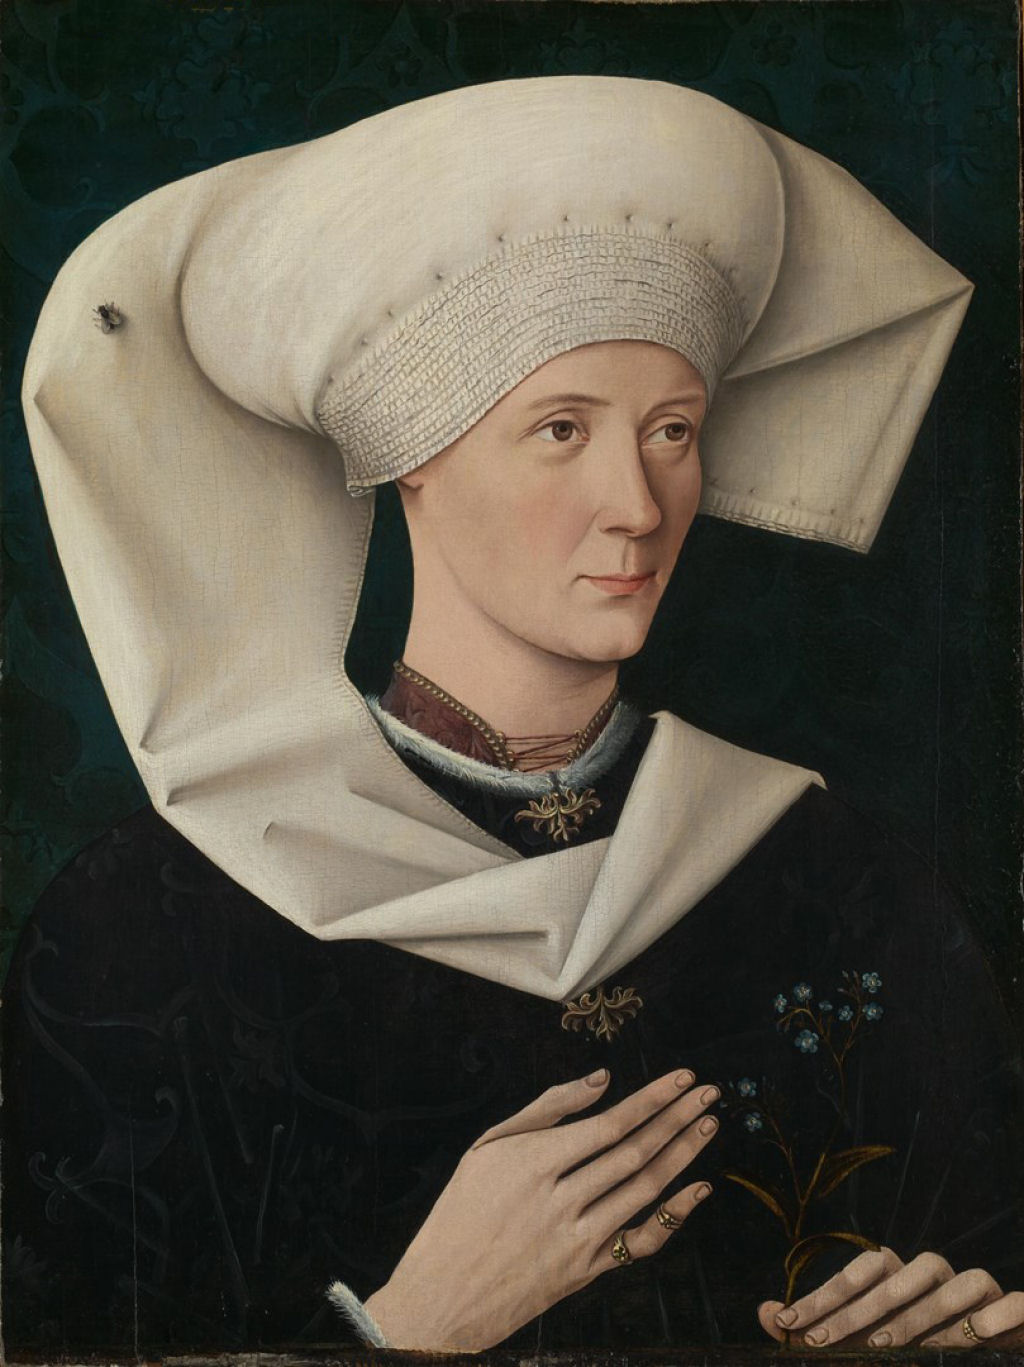 Por que esta senhora tem uma mosca na cabeça?: Um olhar curioso em um retrato do século 15